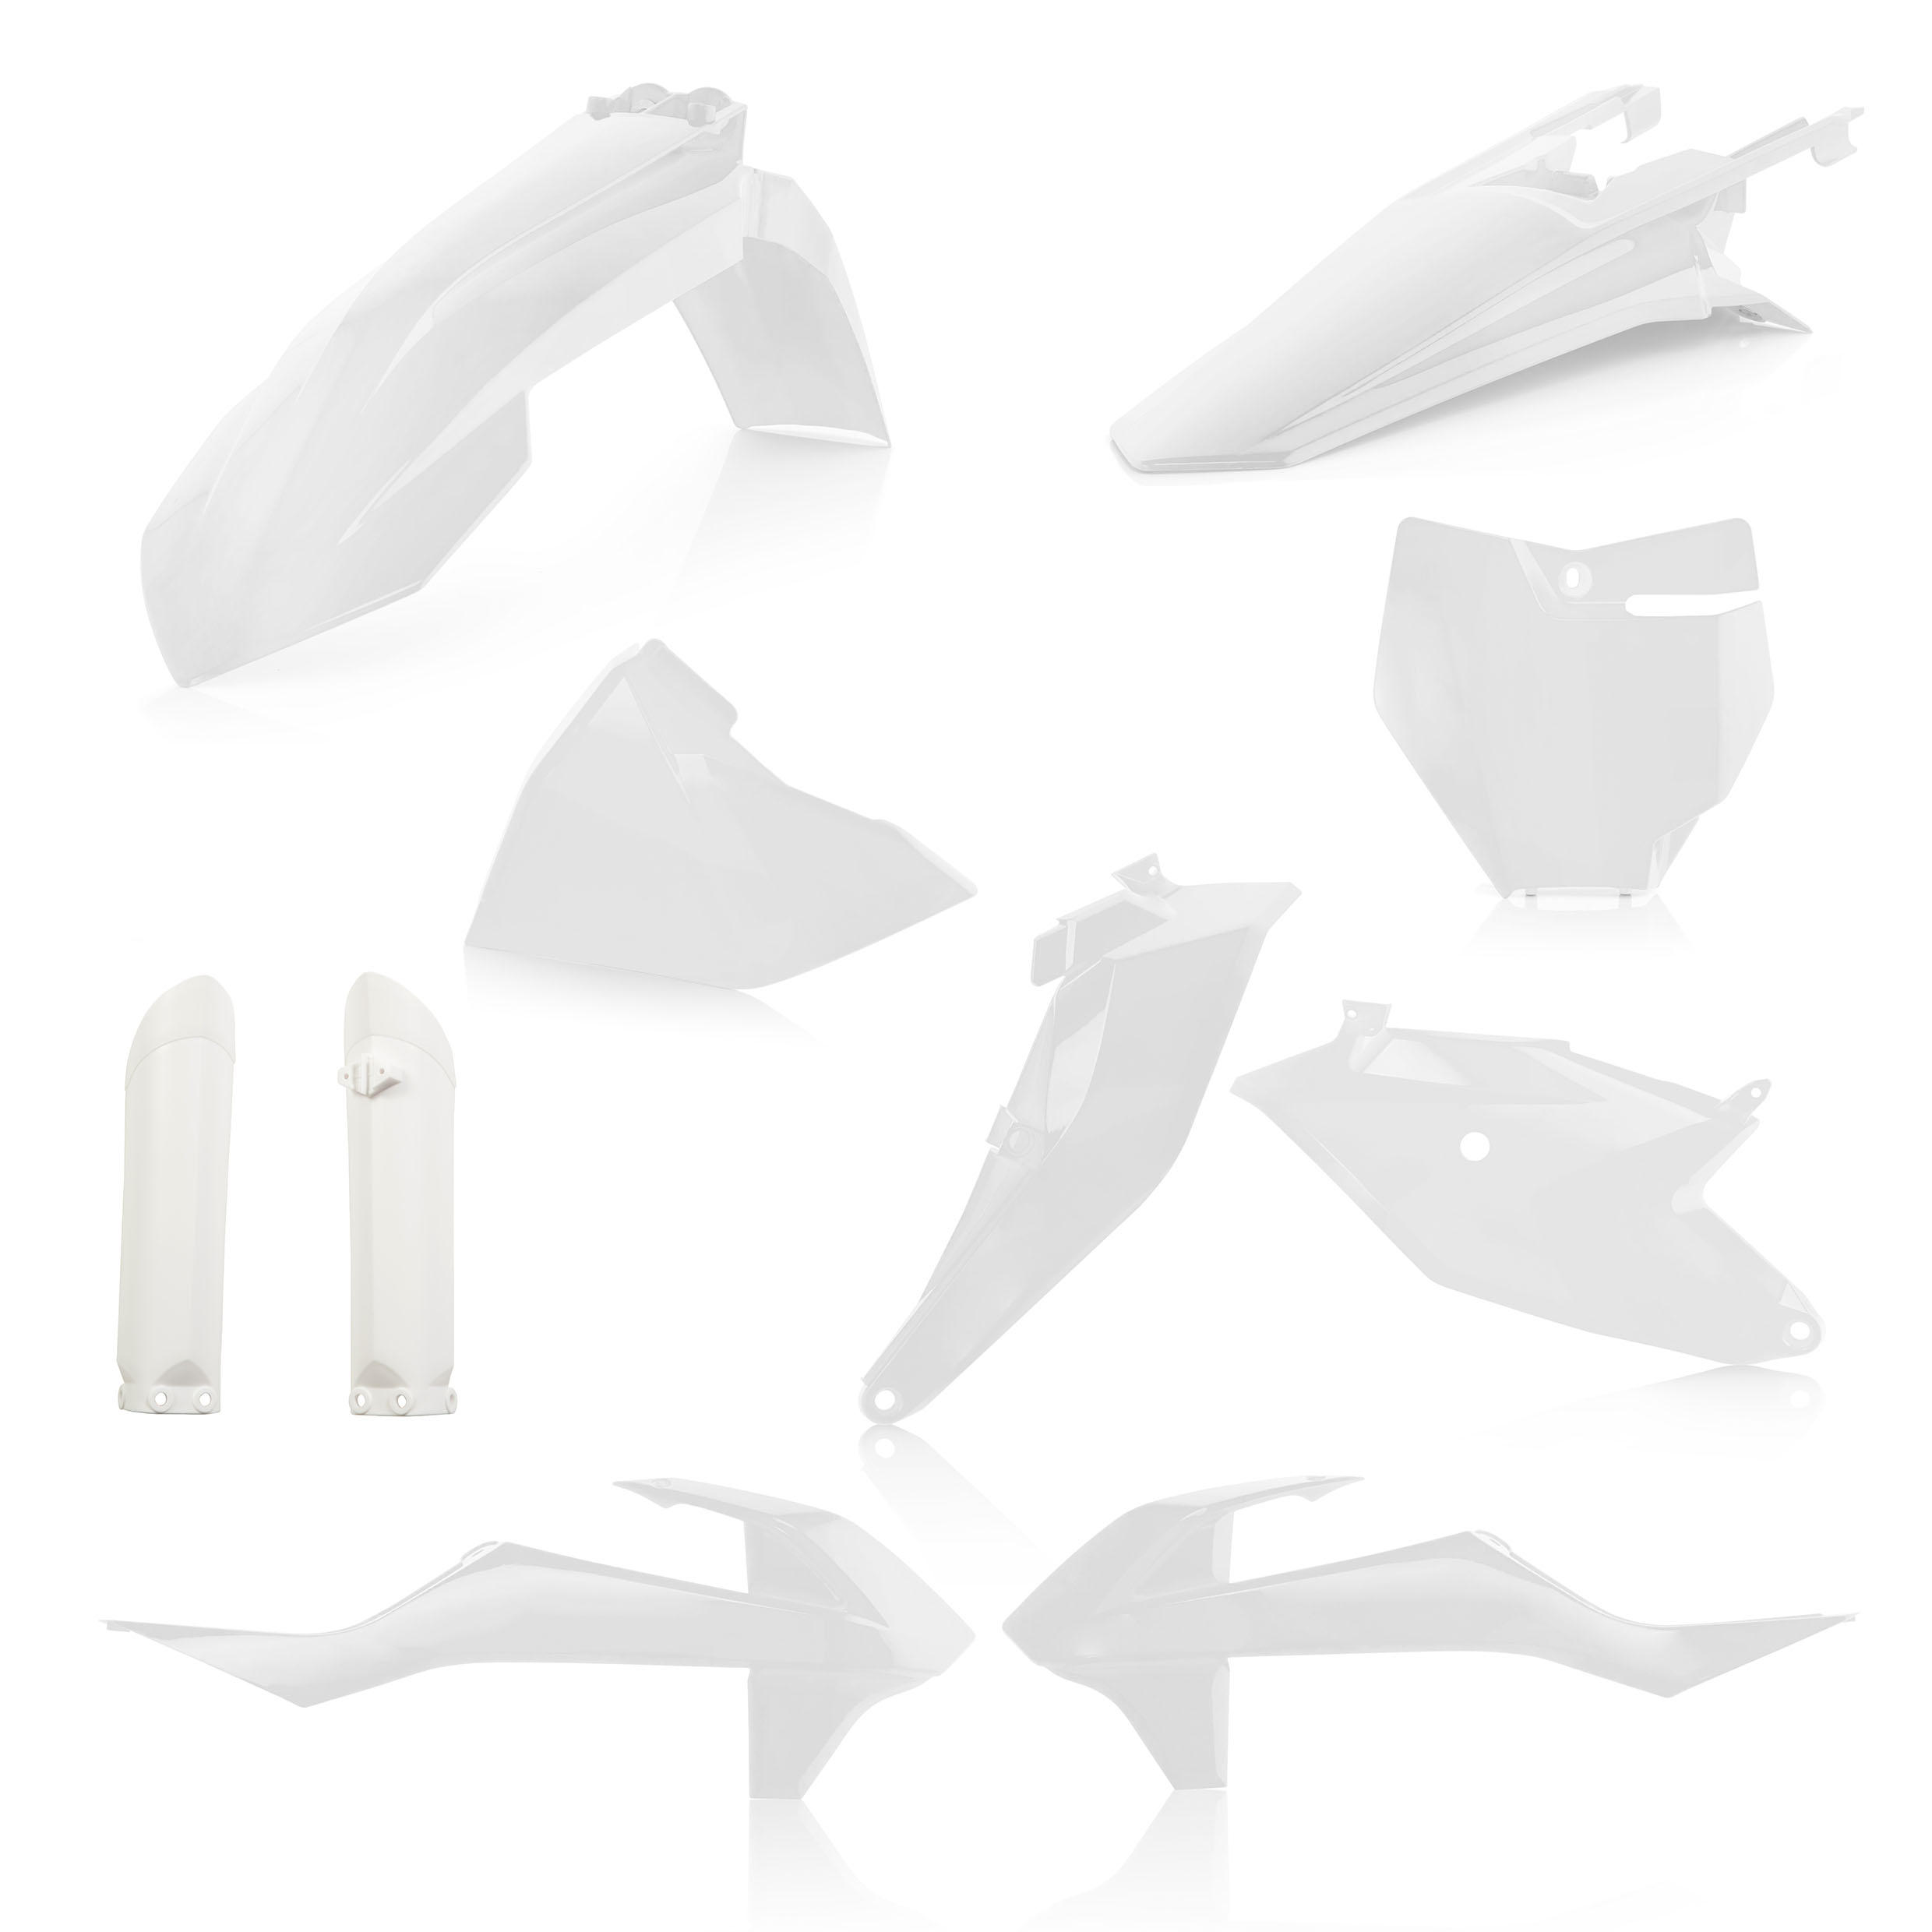 Plastikteile für deine KTM SX 85 in weiß bestehend aus Kotflügel vorn Kotflügel hinten Kühlerspoiler Seitenteile Gabelschützer Startnummerntafel Air Box Cover